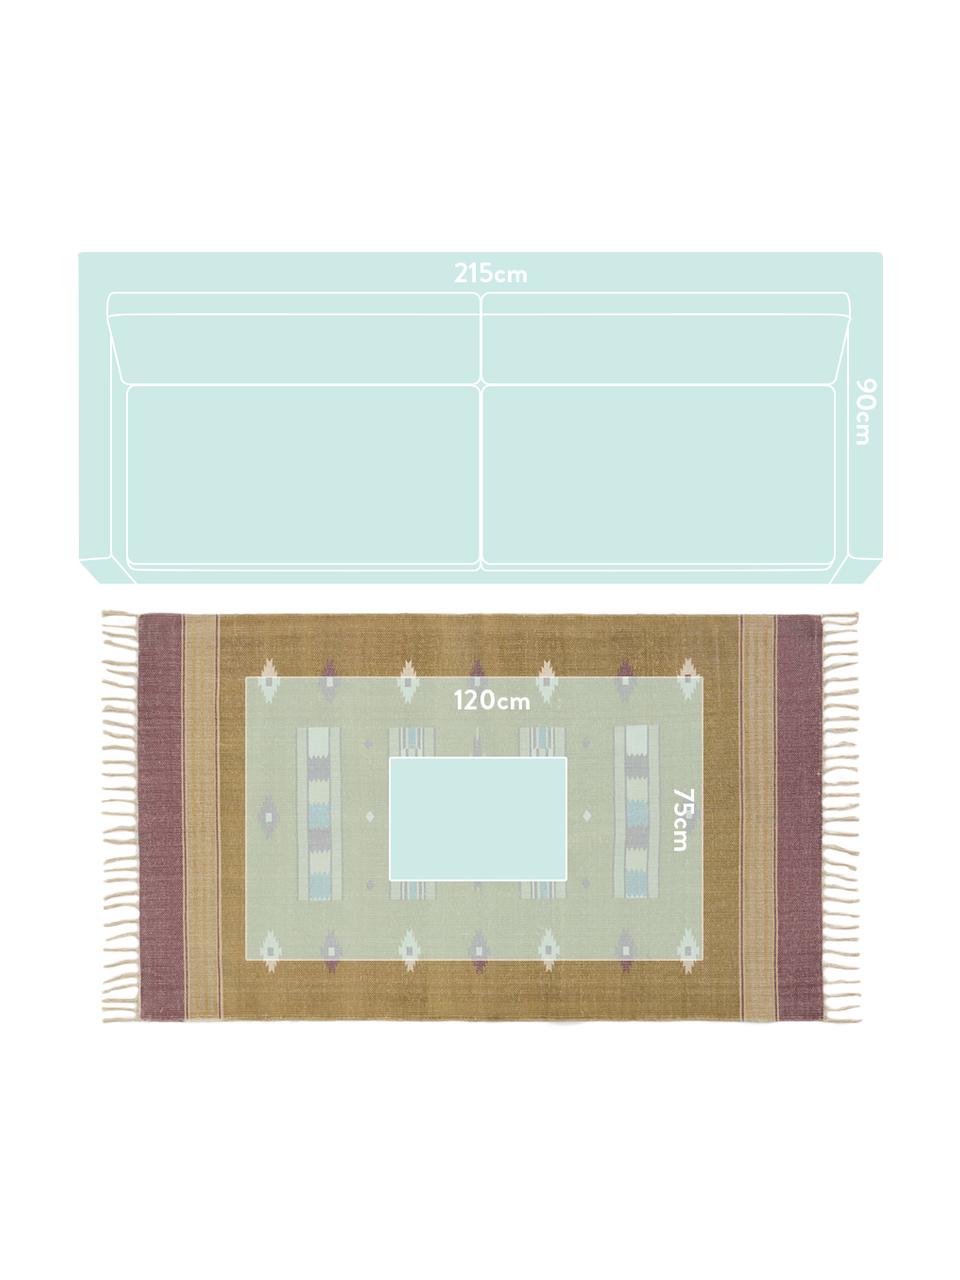 Teppich Kamel im Ethno Style, 100% Baumwolle, Senfgelb, Beige, Lila, Blau, B 150 x L 200 cm (Größe S)